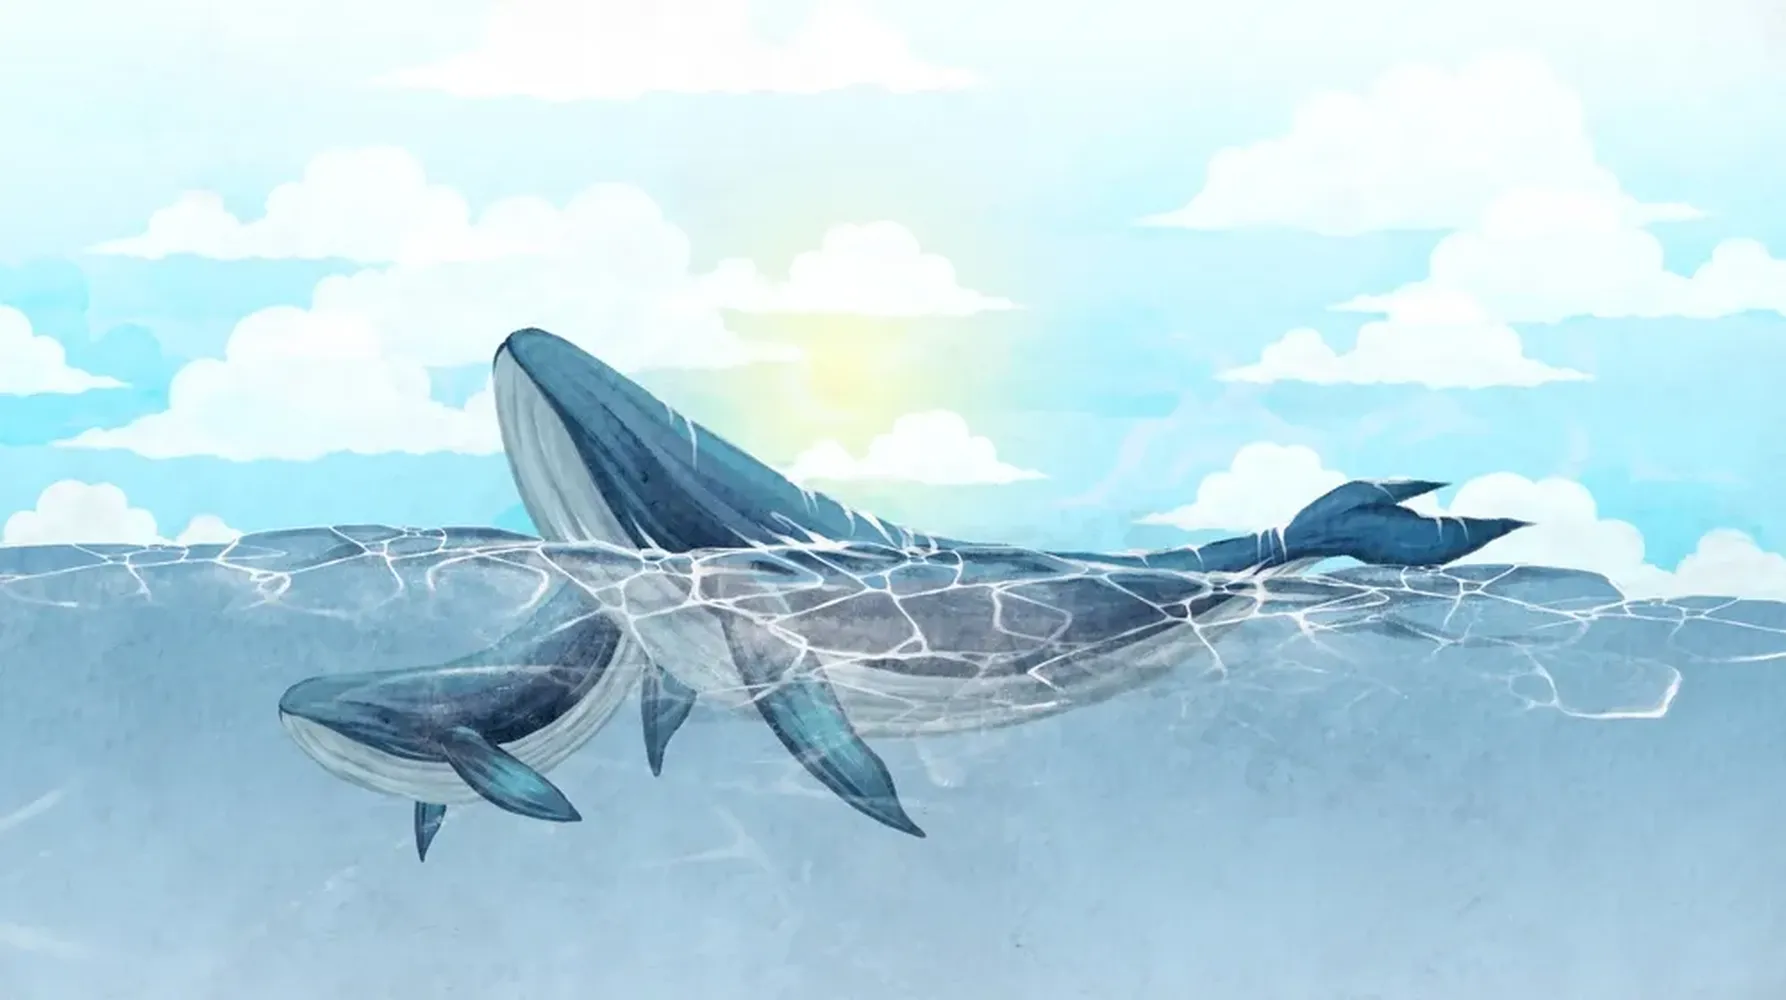 پوستر دیواری نقاشی رقص نهنگ ها در دریای آبی